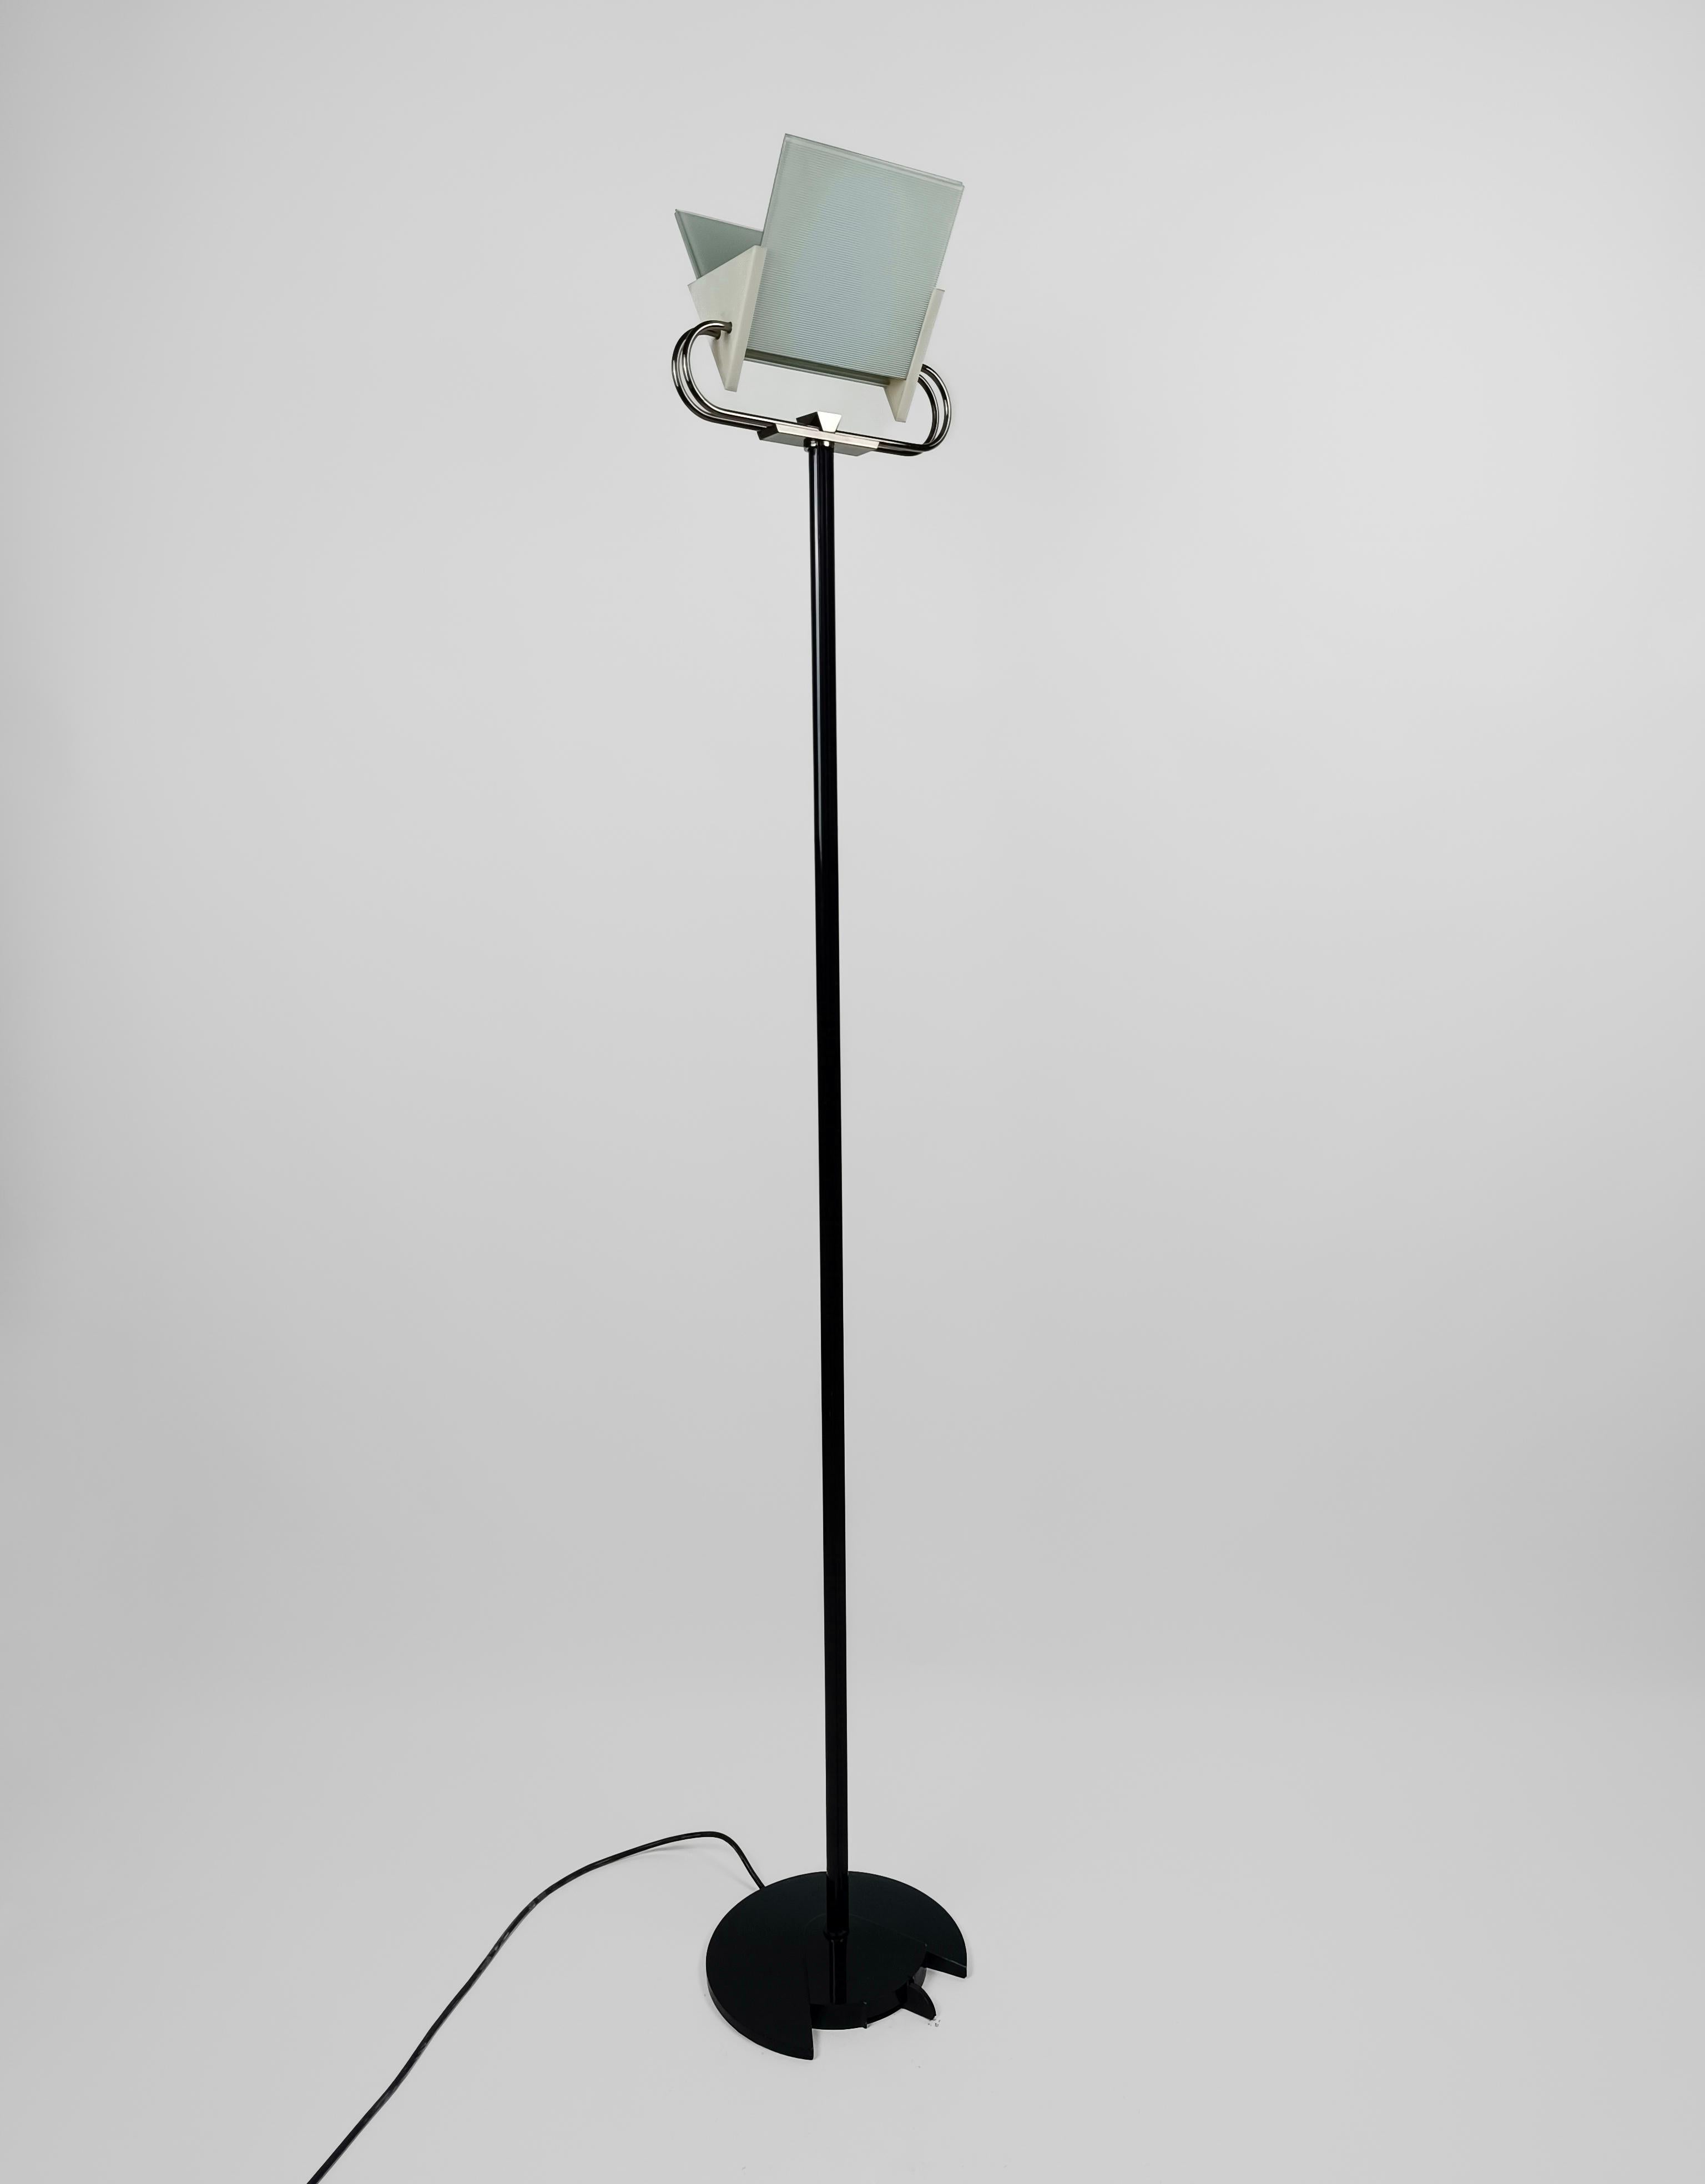 Un lampadaire post-moderne d'un grand charme, fabriqué en Italie par la société historique d'éclairage Arteluce fondée en 1939 par Gino Sarfatti.
Conçu et produit dans les années 80, ce lampadaire présente de nombreux éléments typiques de l'époque